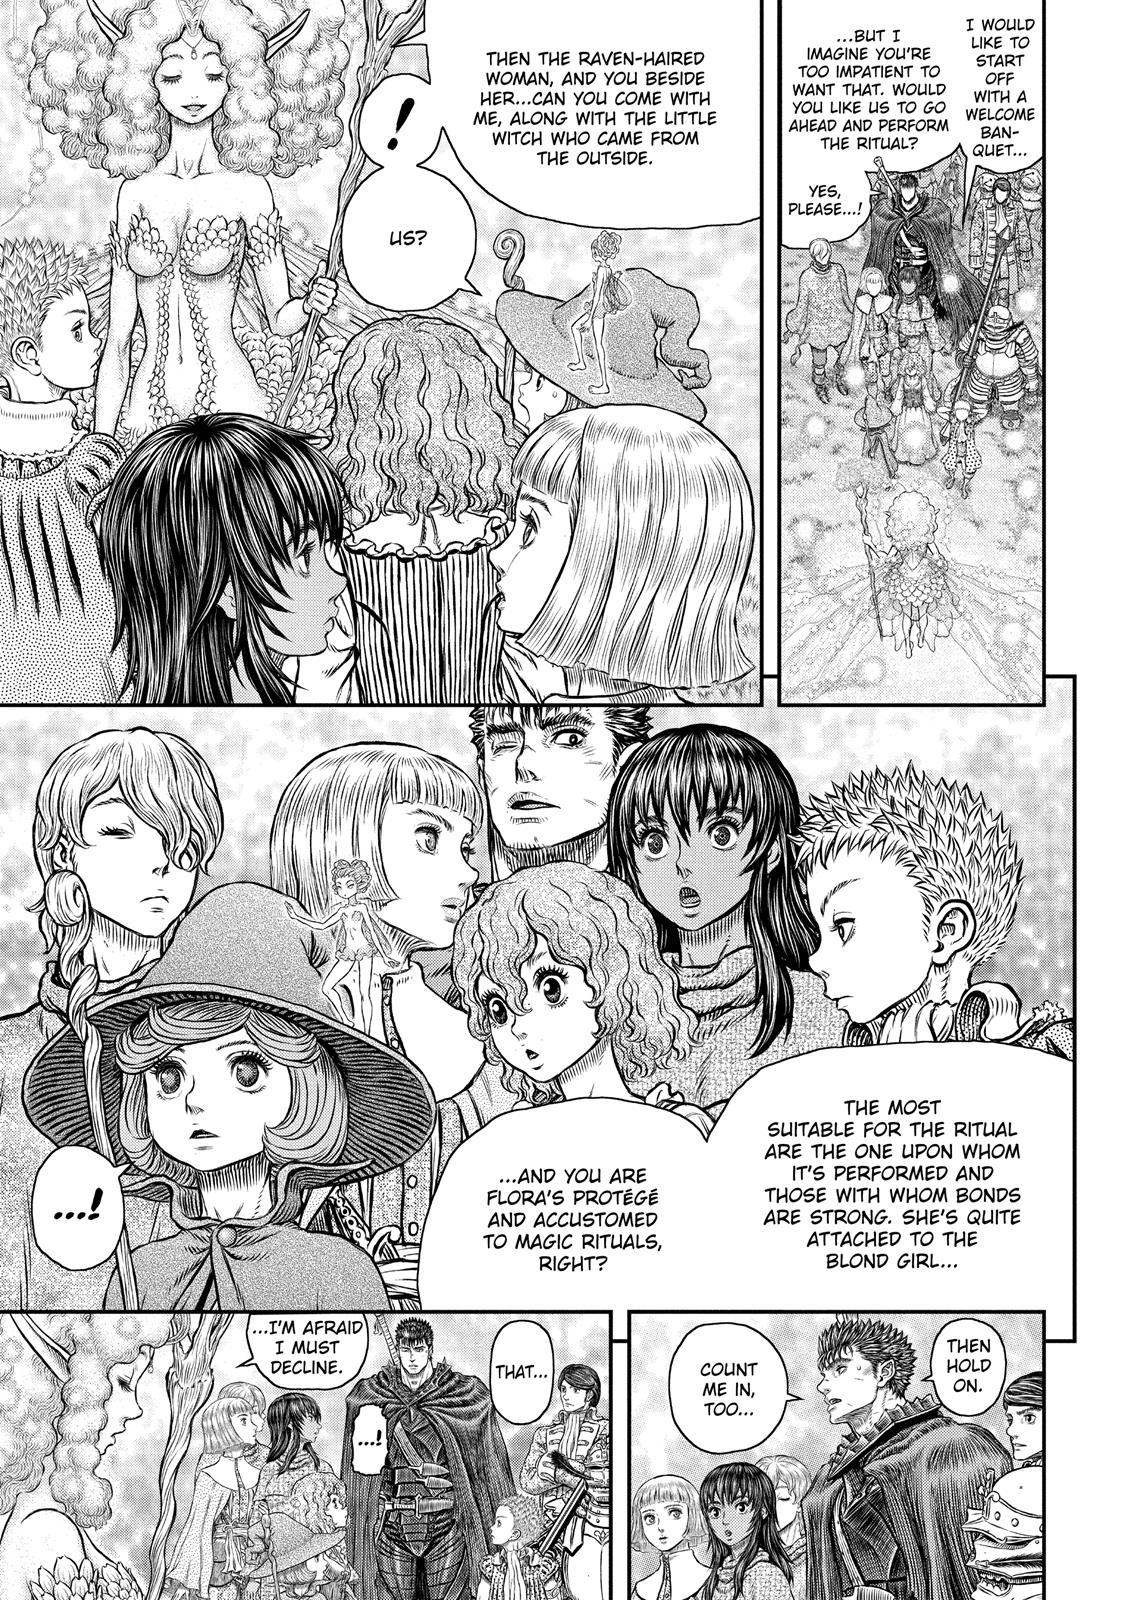 Berserk Manga Chapter 347 image 08